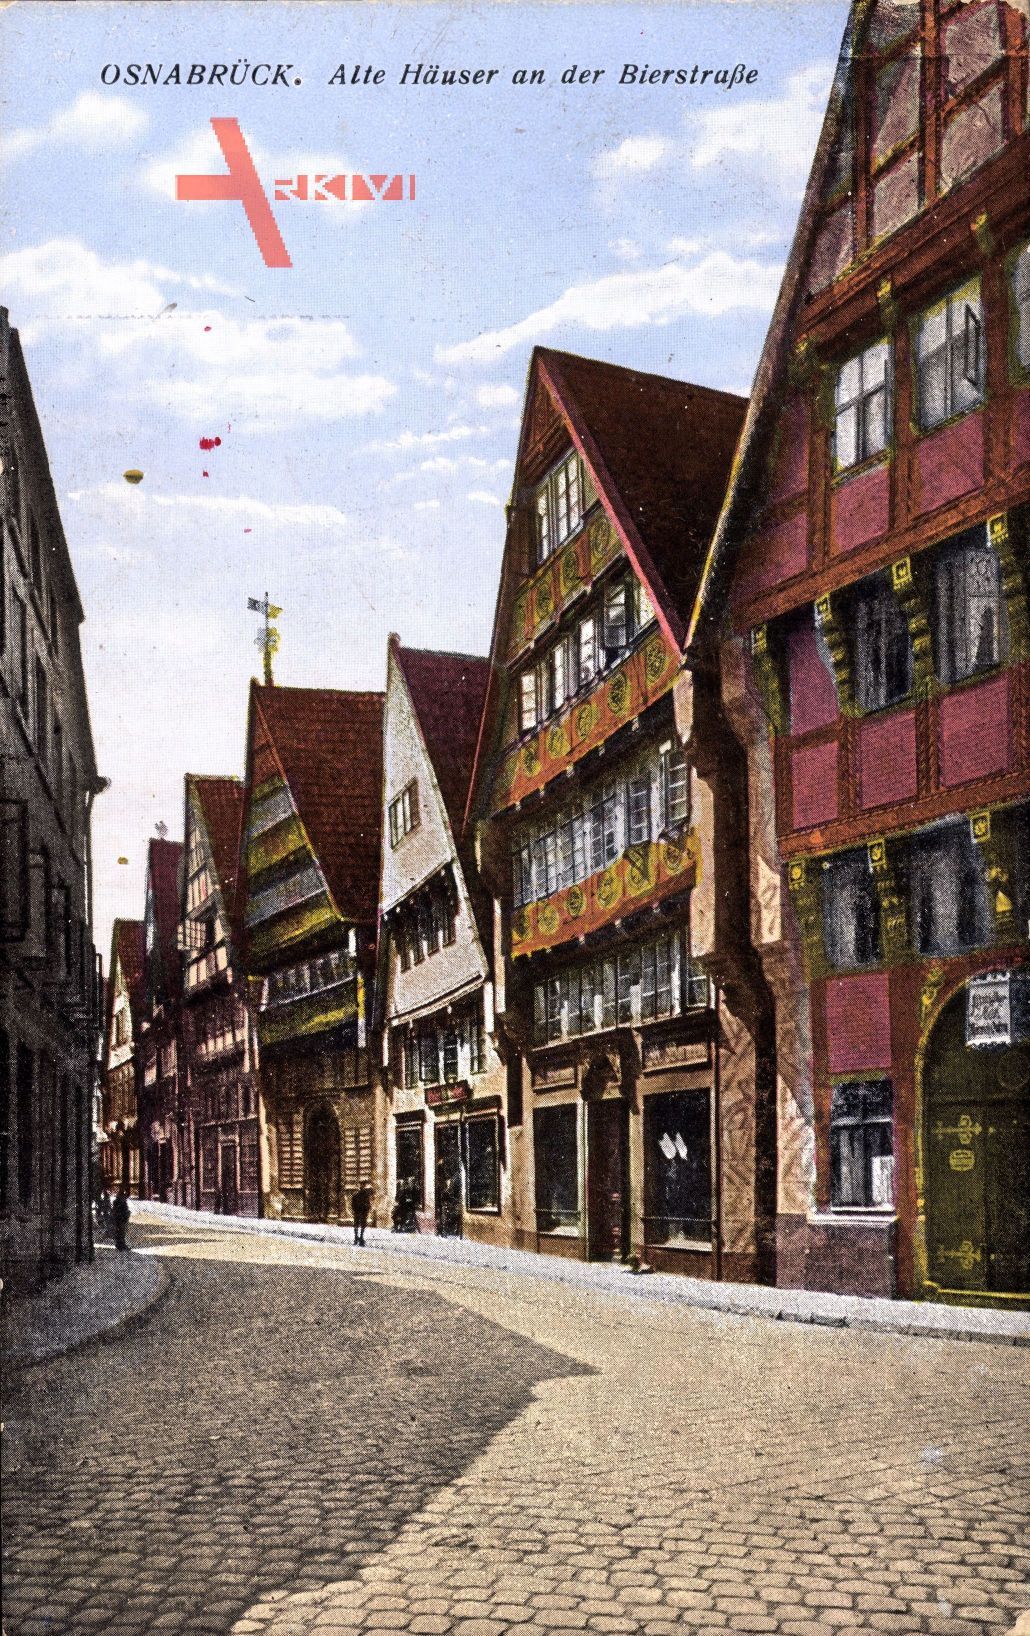 Osnabrück, Blick auf alte Häuser an der Bierstraße